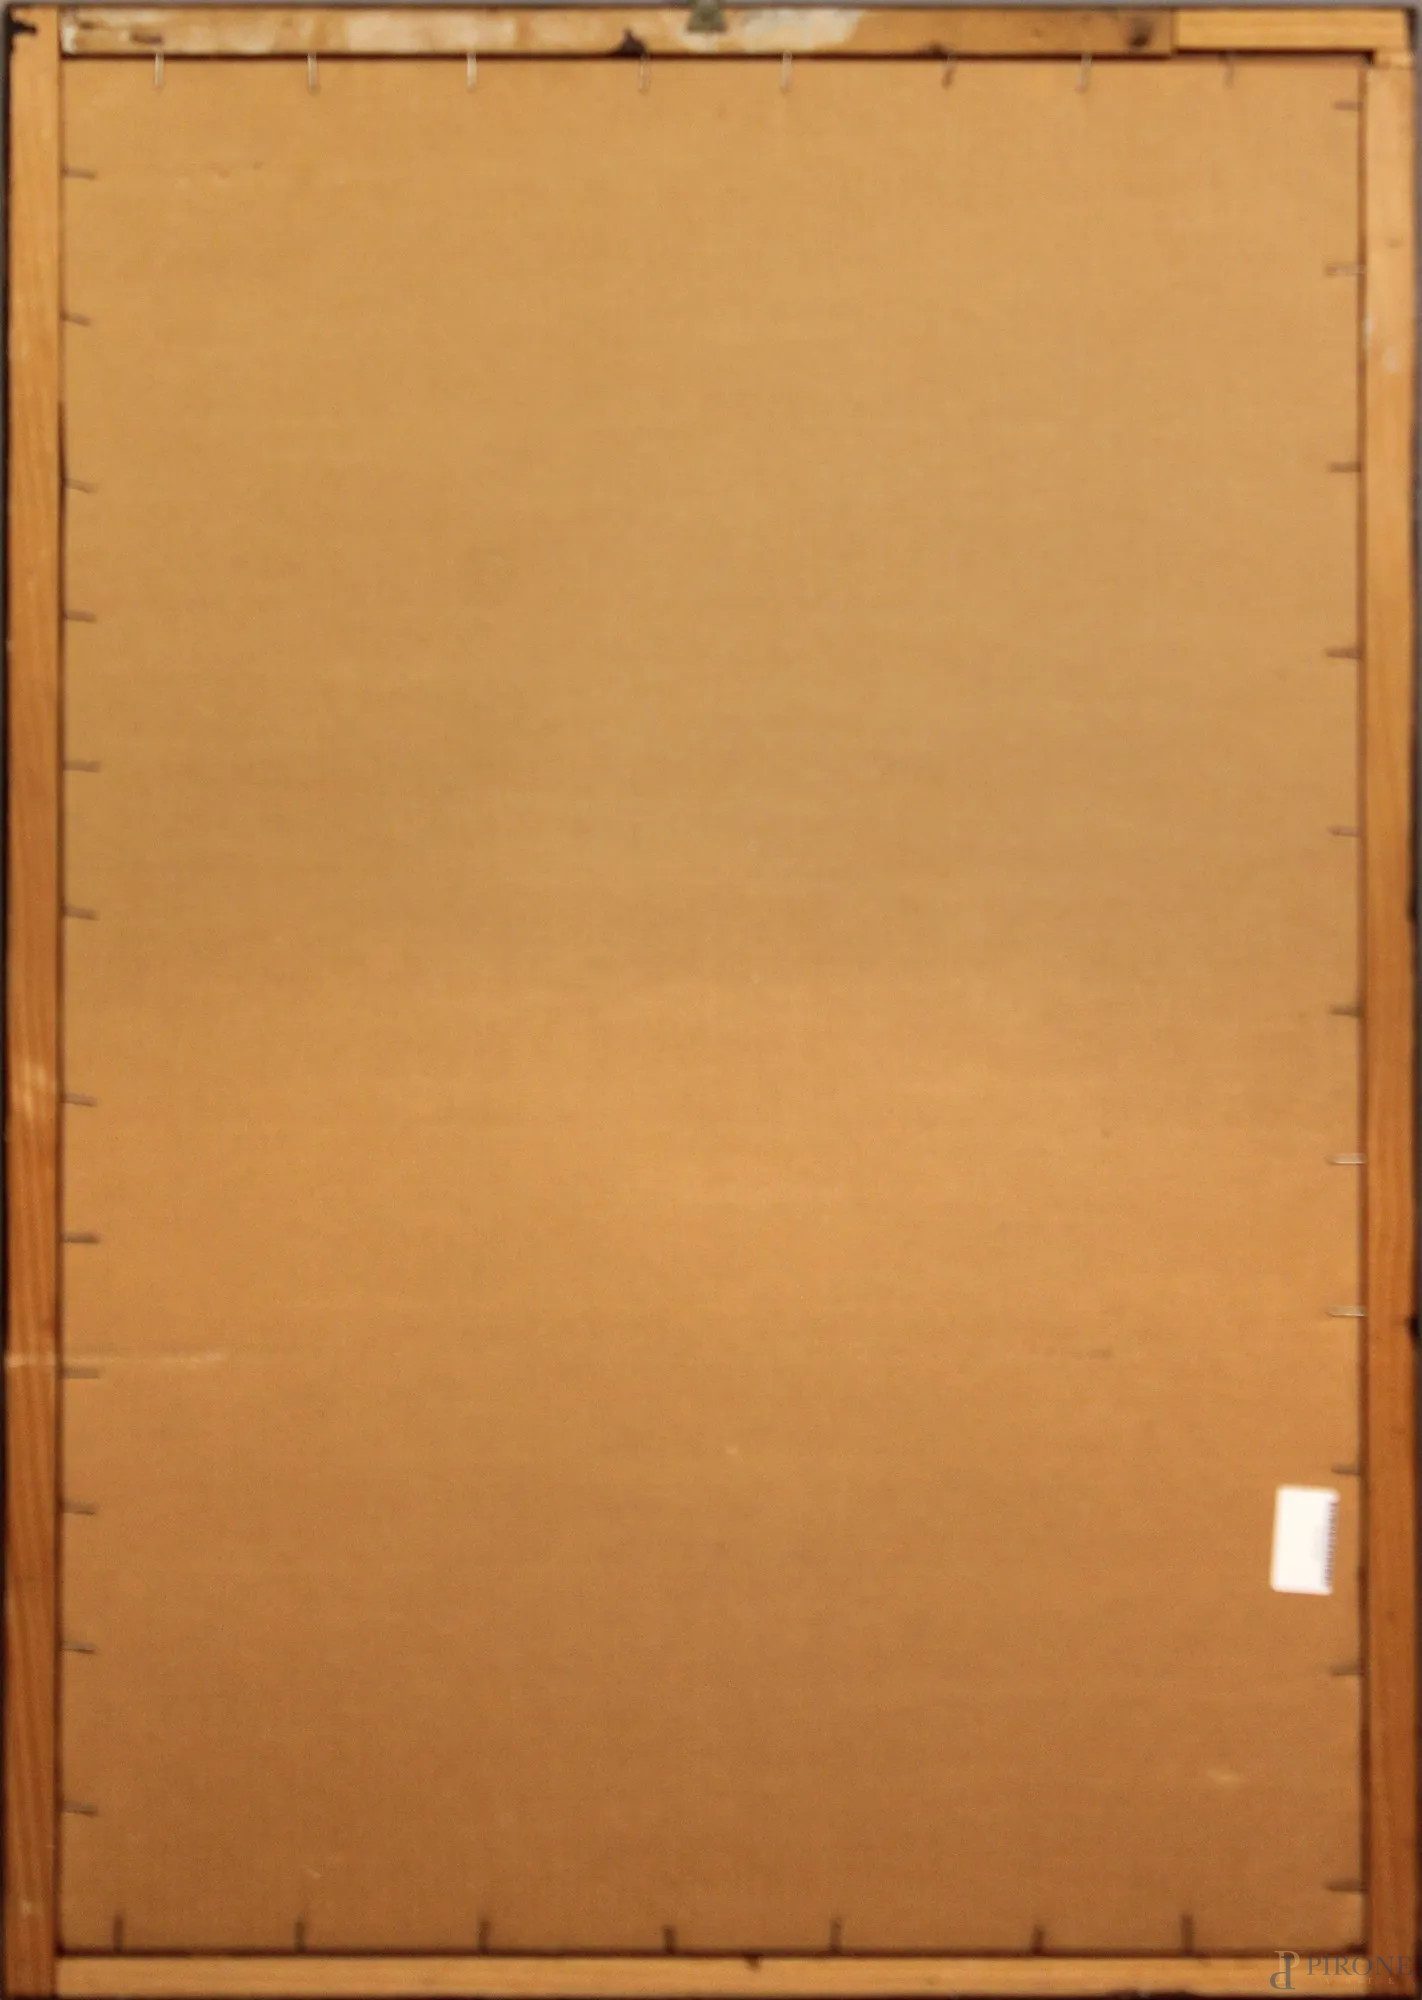 Ritratto di bimba a matita sanguigna su carta (20x30cm) – A R T E F à R E